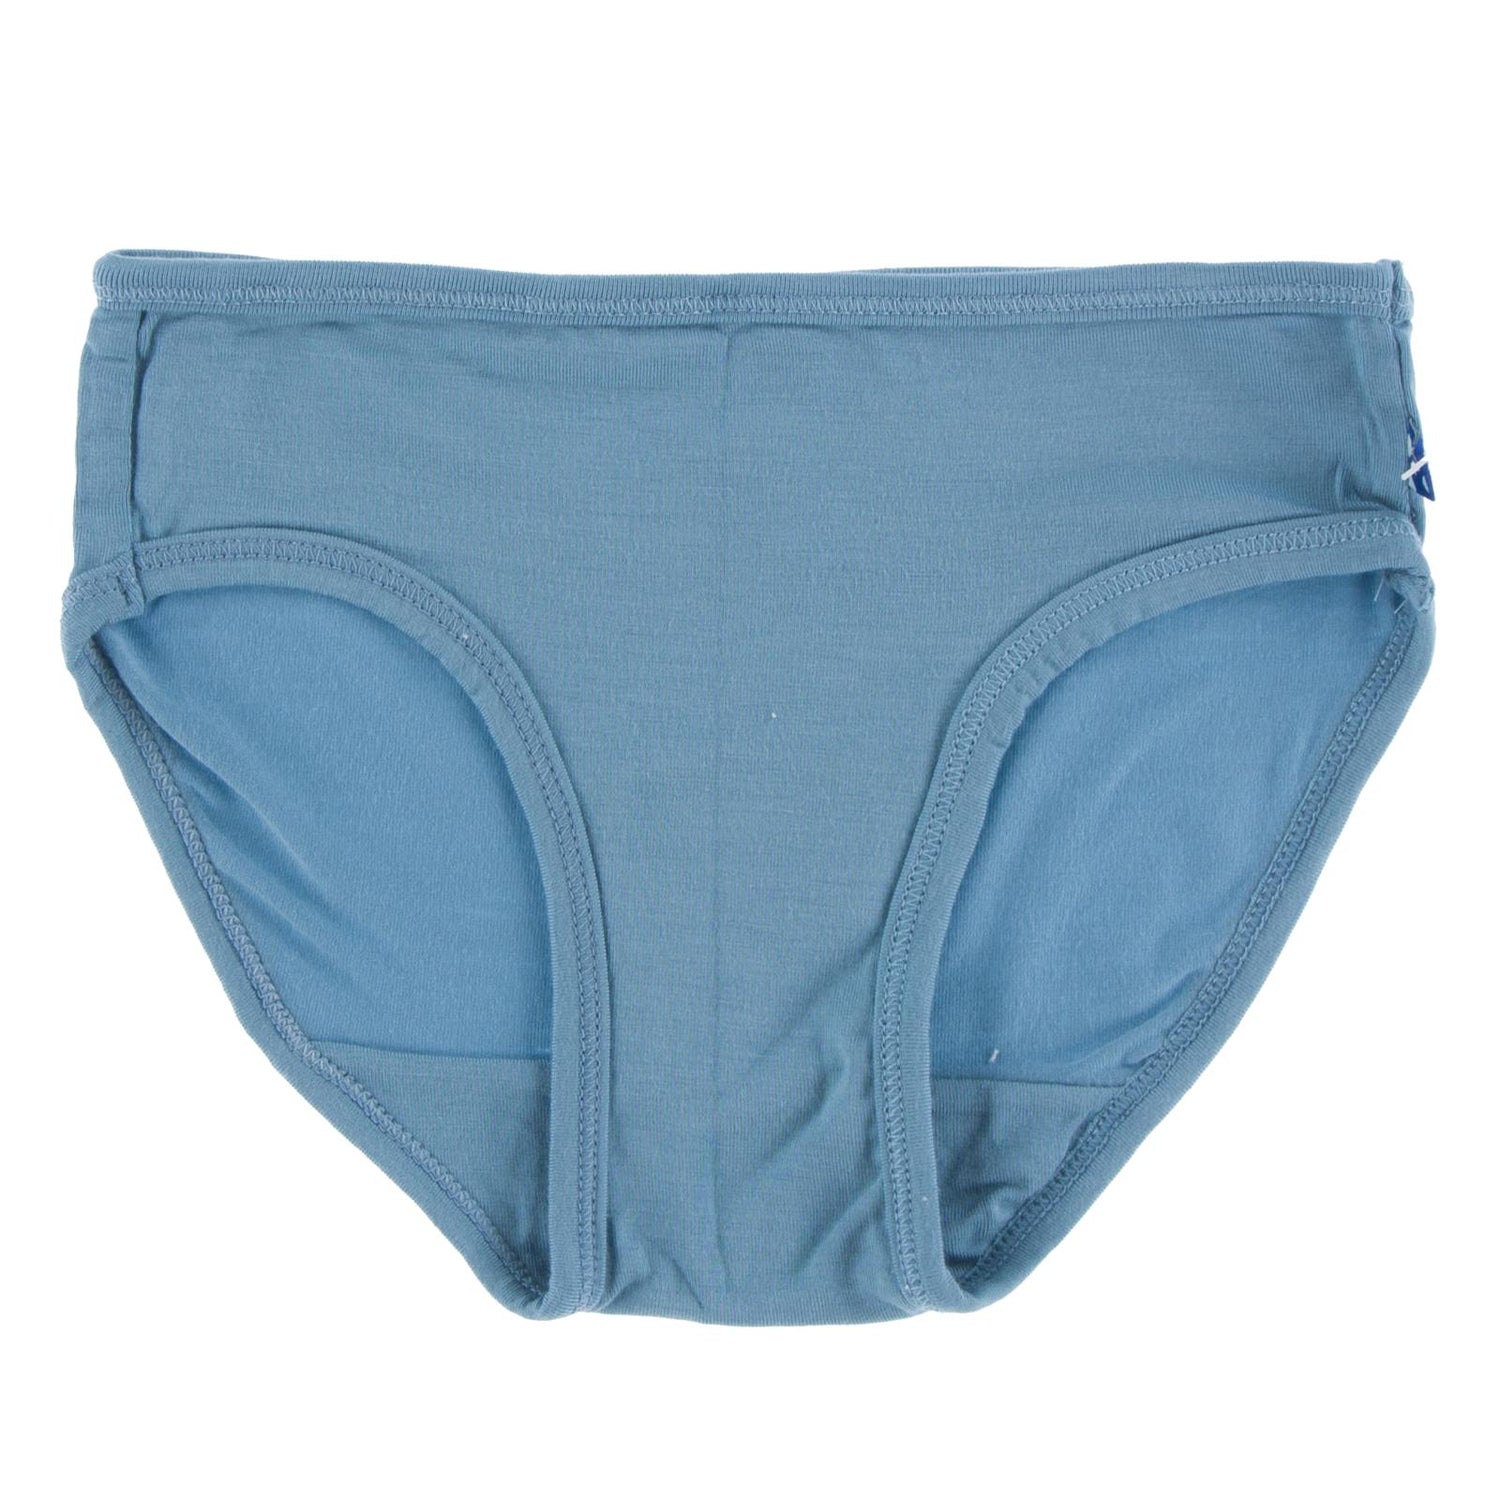 Underwear in Blue Moon